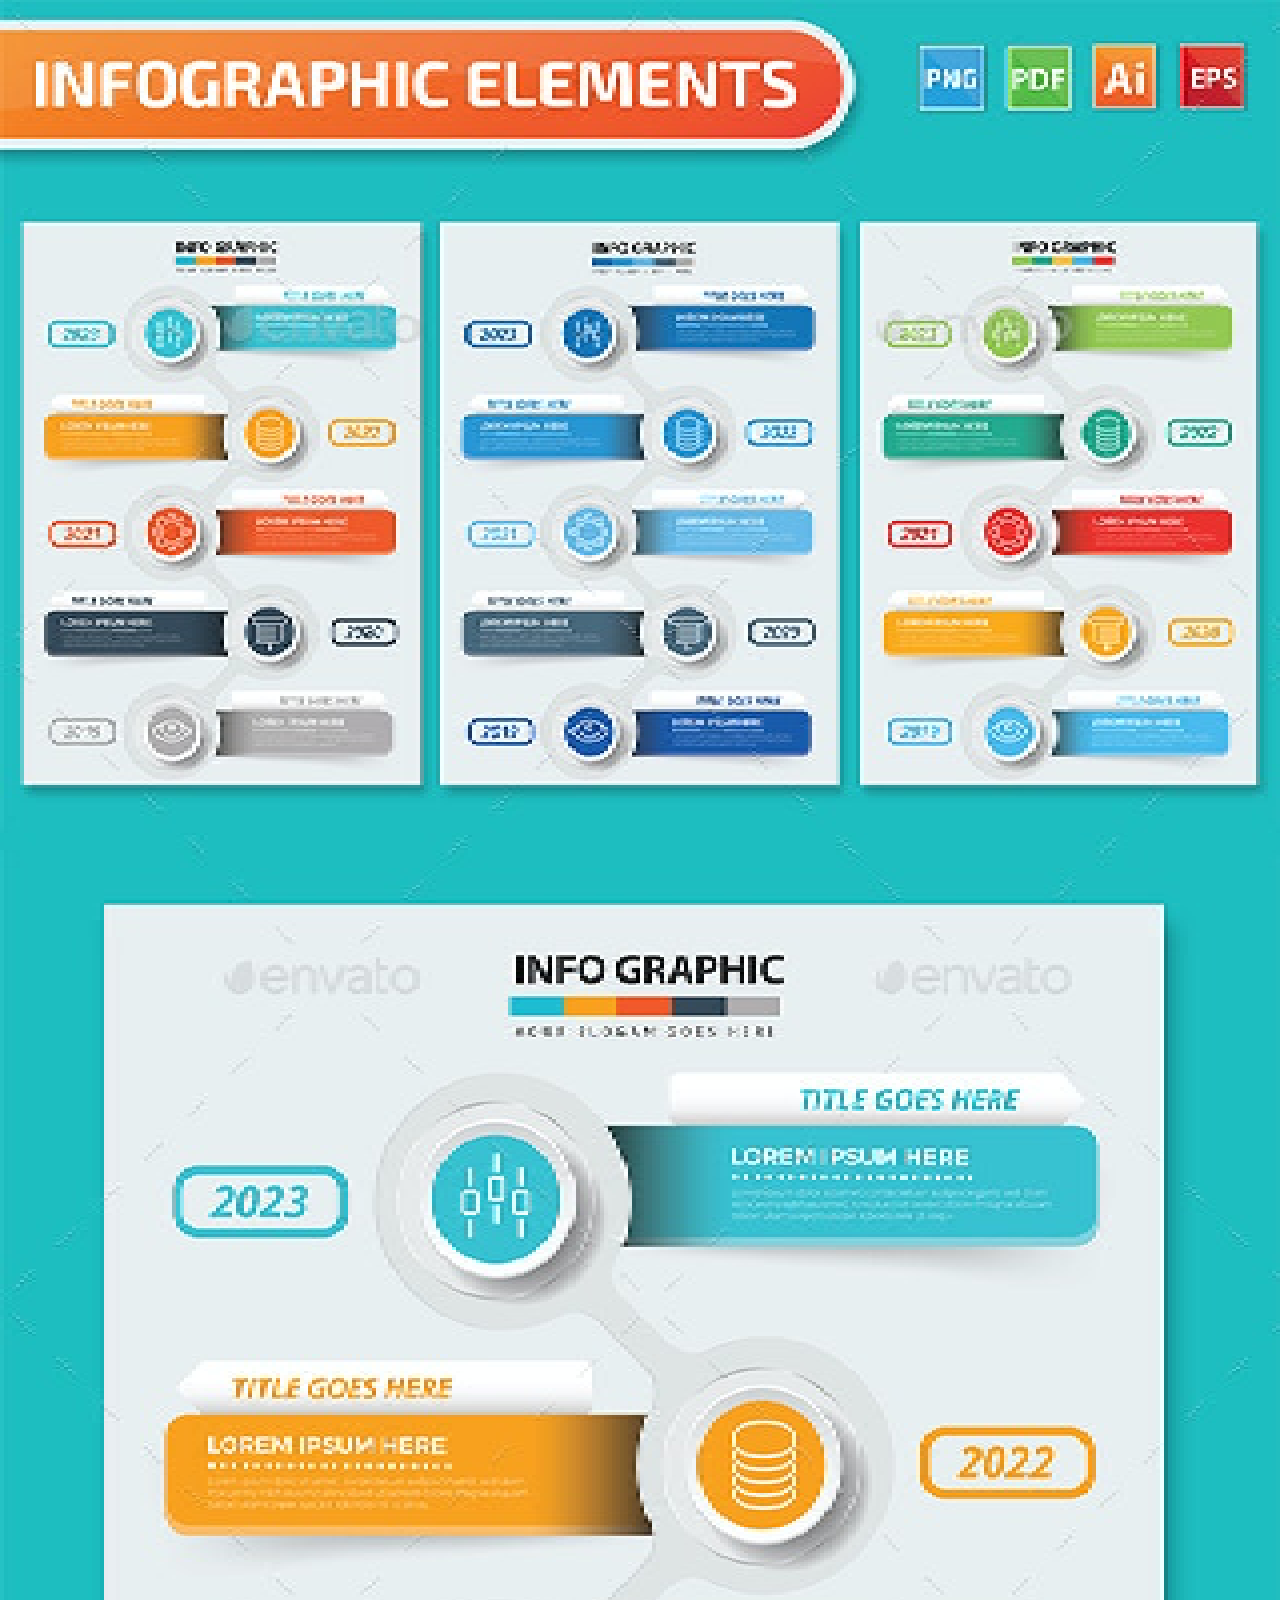 Timeline infographics design pinterest image.